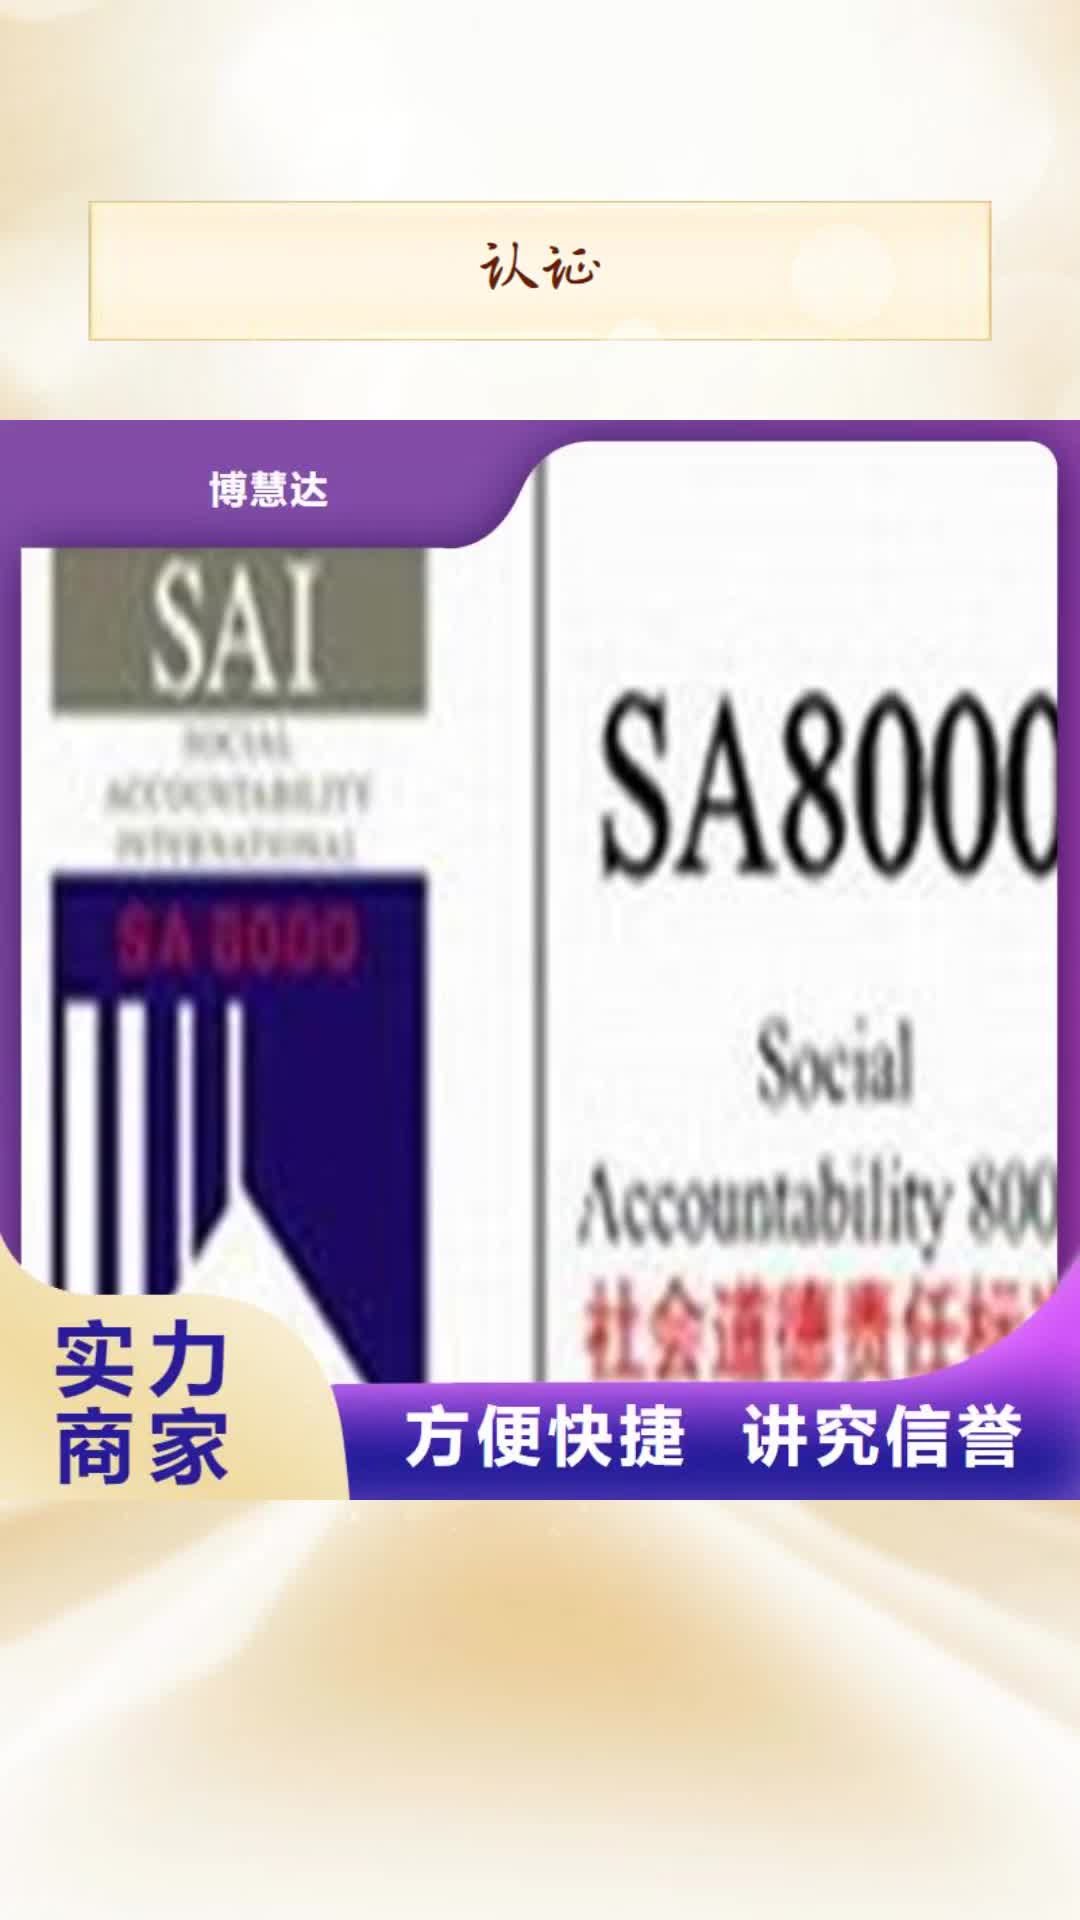 河源【认证】,ISO9000认证口碑商家